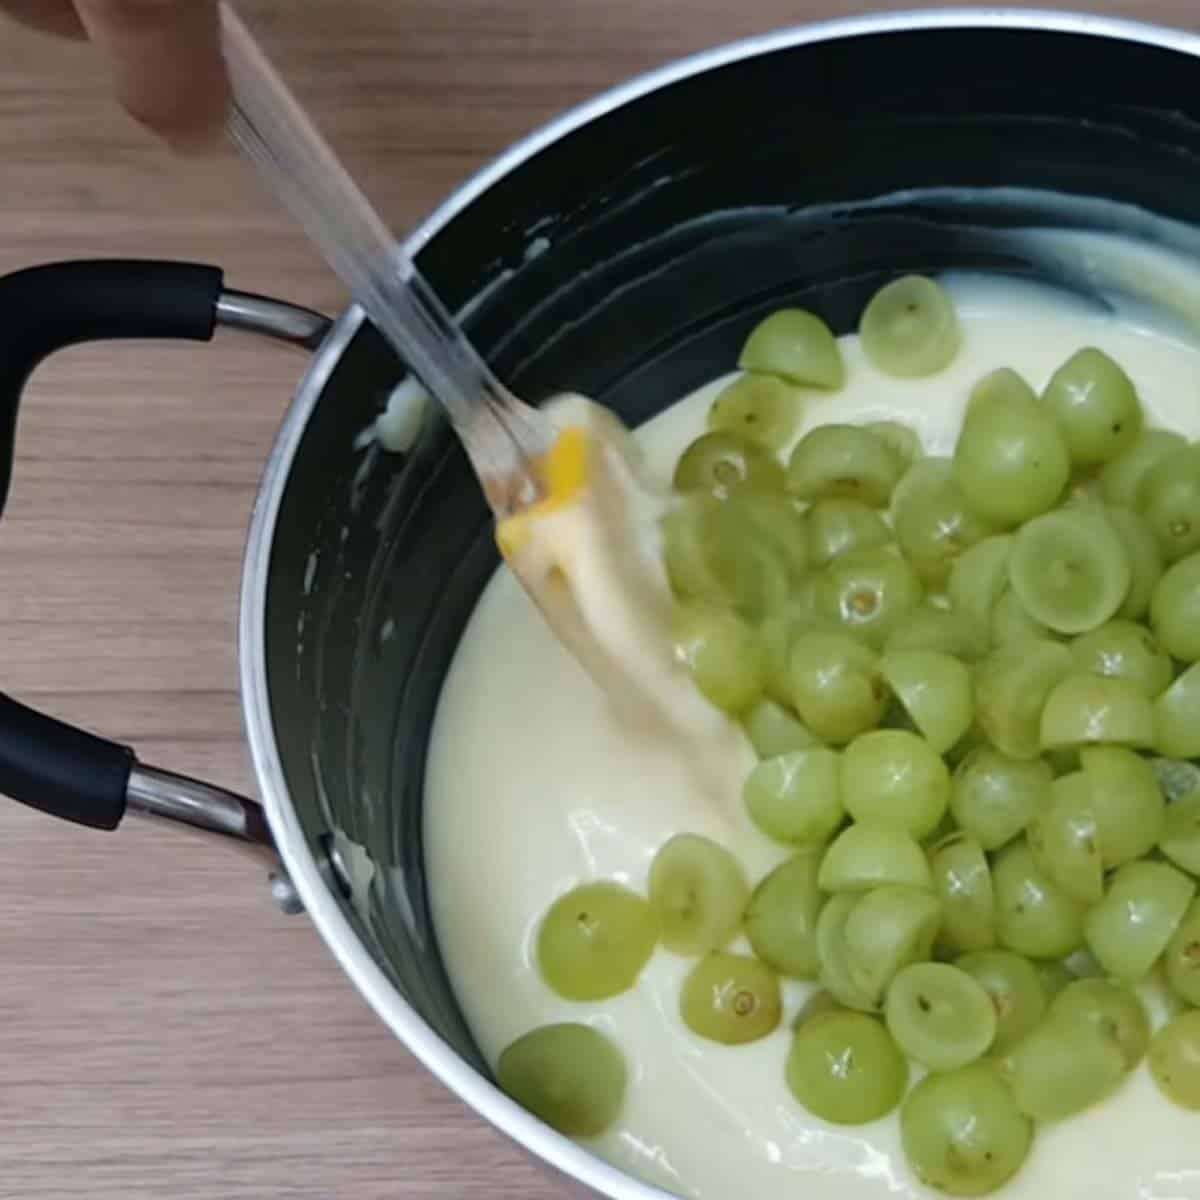 Colocando uvas picadas junto com o creme branco